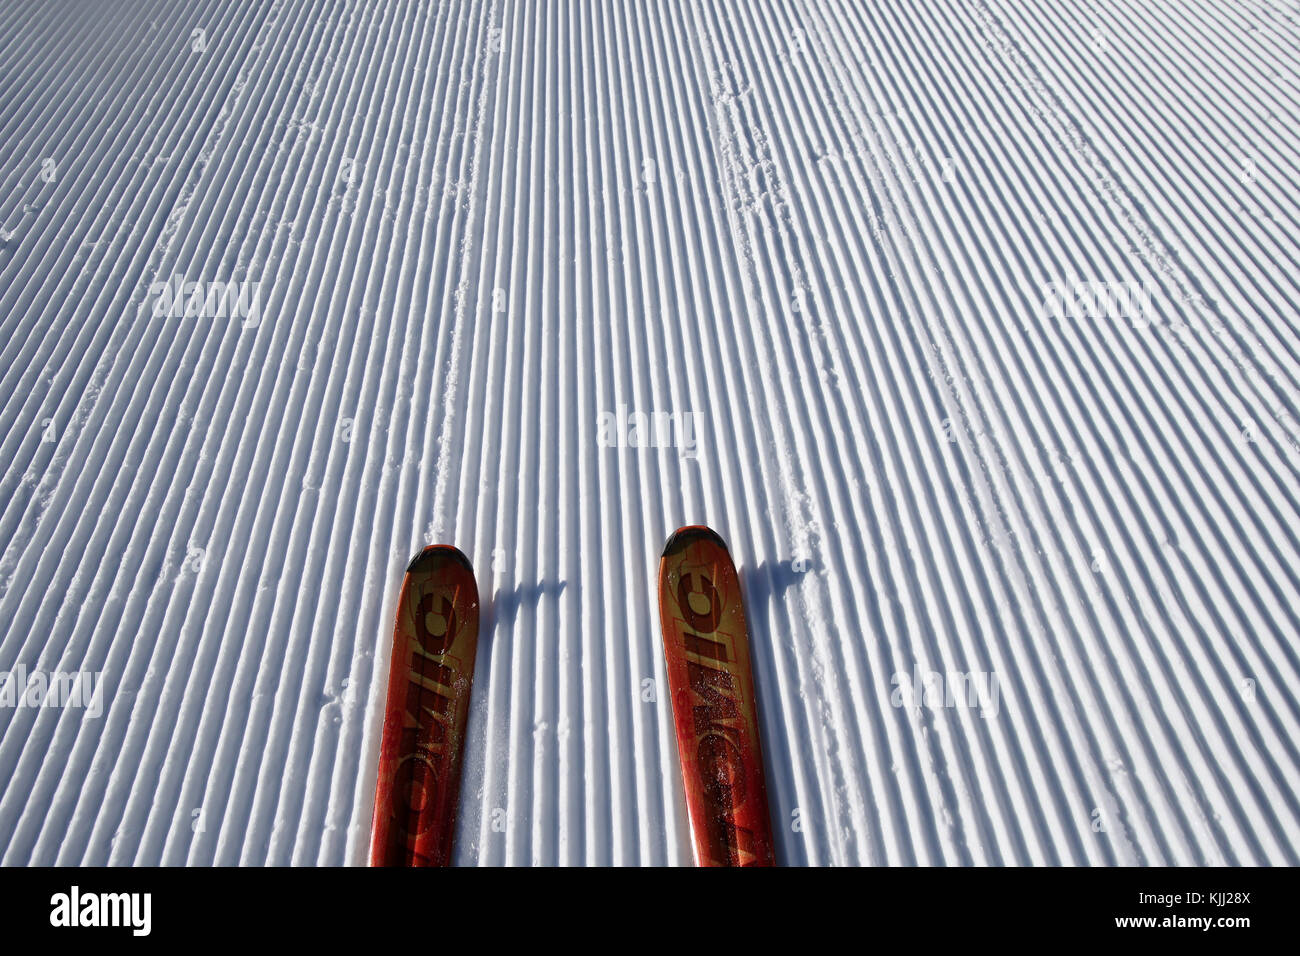 Alpes françaises. Paire de skis rouge sur la neige. Pistes de ski. La France. Banque D'Images